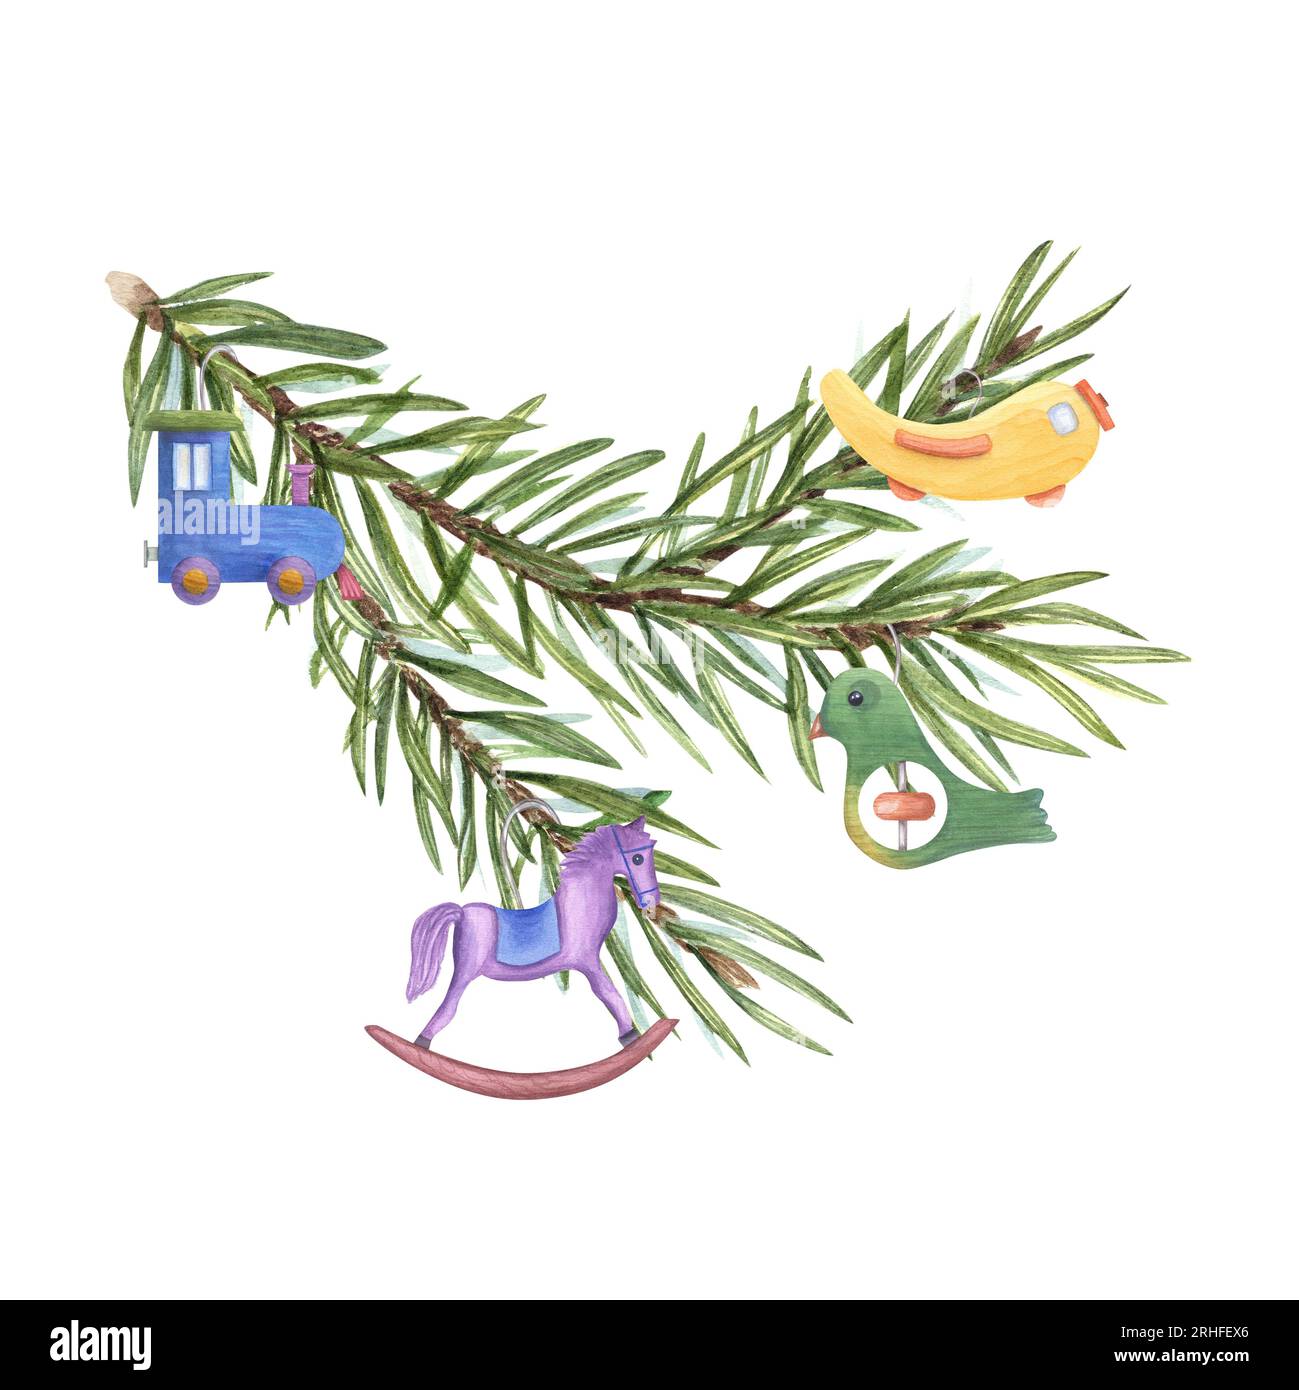 Weihnachtsbaumzweig mit Weihnachtsbaumspielzeug. Flugzeug, Zug, Vogel, Pferd. Holzdekoration für Kinder auf Fichtenzweig. Aquarellzeichnung Stockfoto